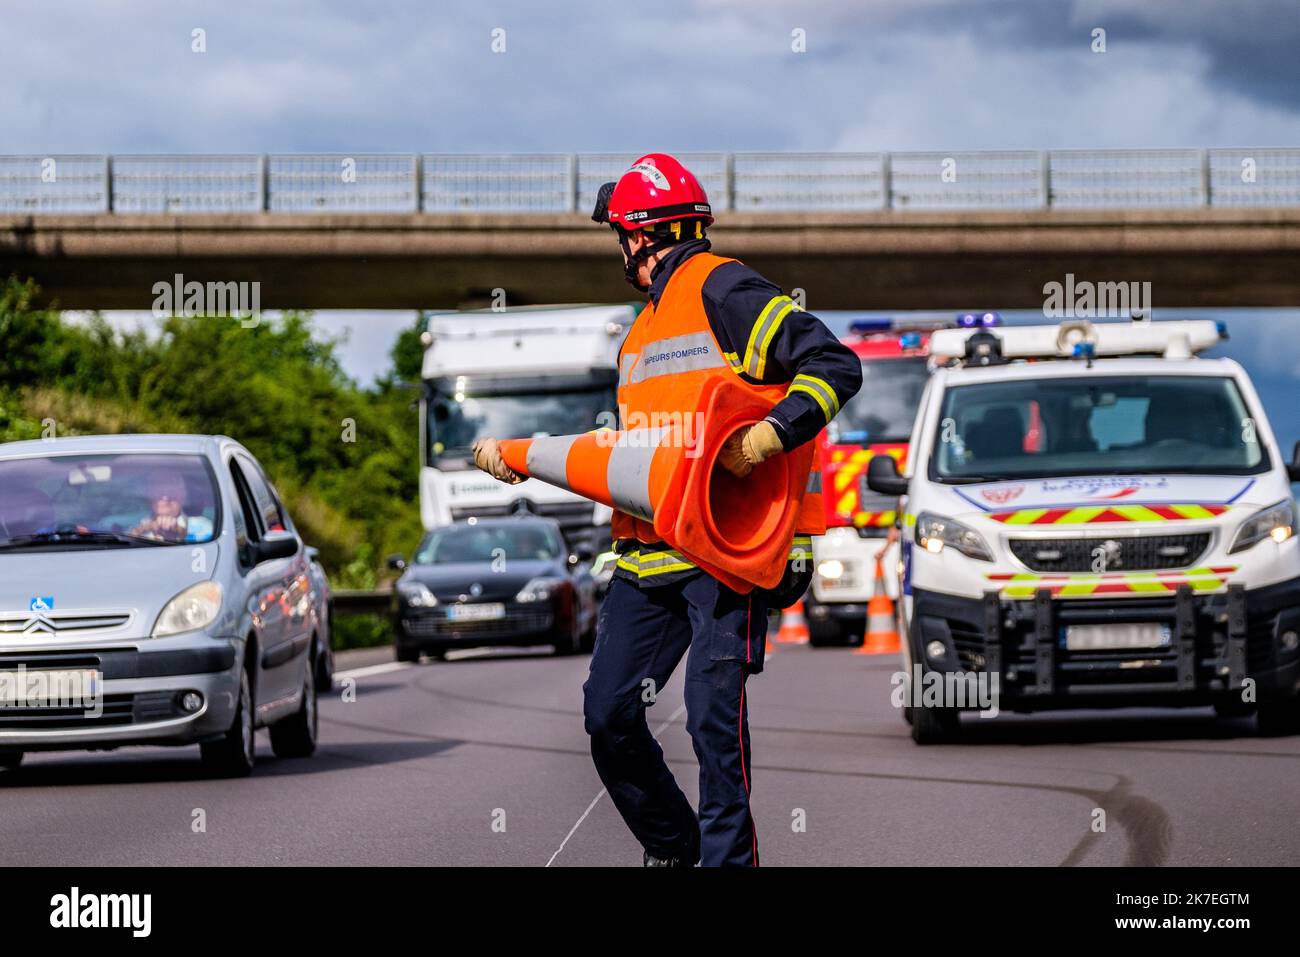 ©Arnaud BEINAT/Maxppp. 2021/08/06, Moselle, France. Un sapeurs pompiers veille à sa sécurité pendentif qu'il a installé des placettes de signalisation sur les yeux d'un accident. Banque D'Images